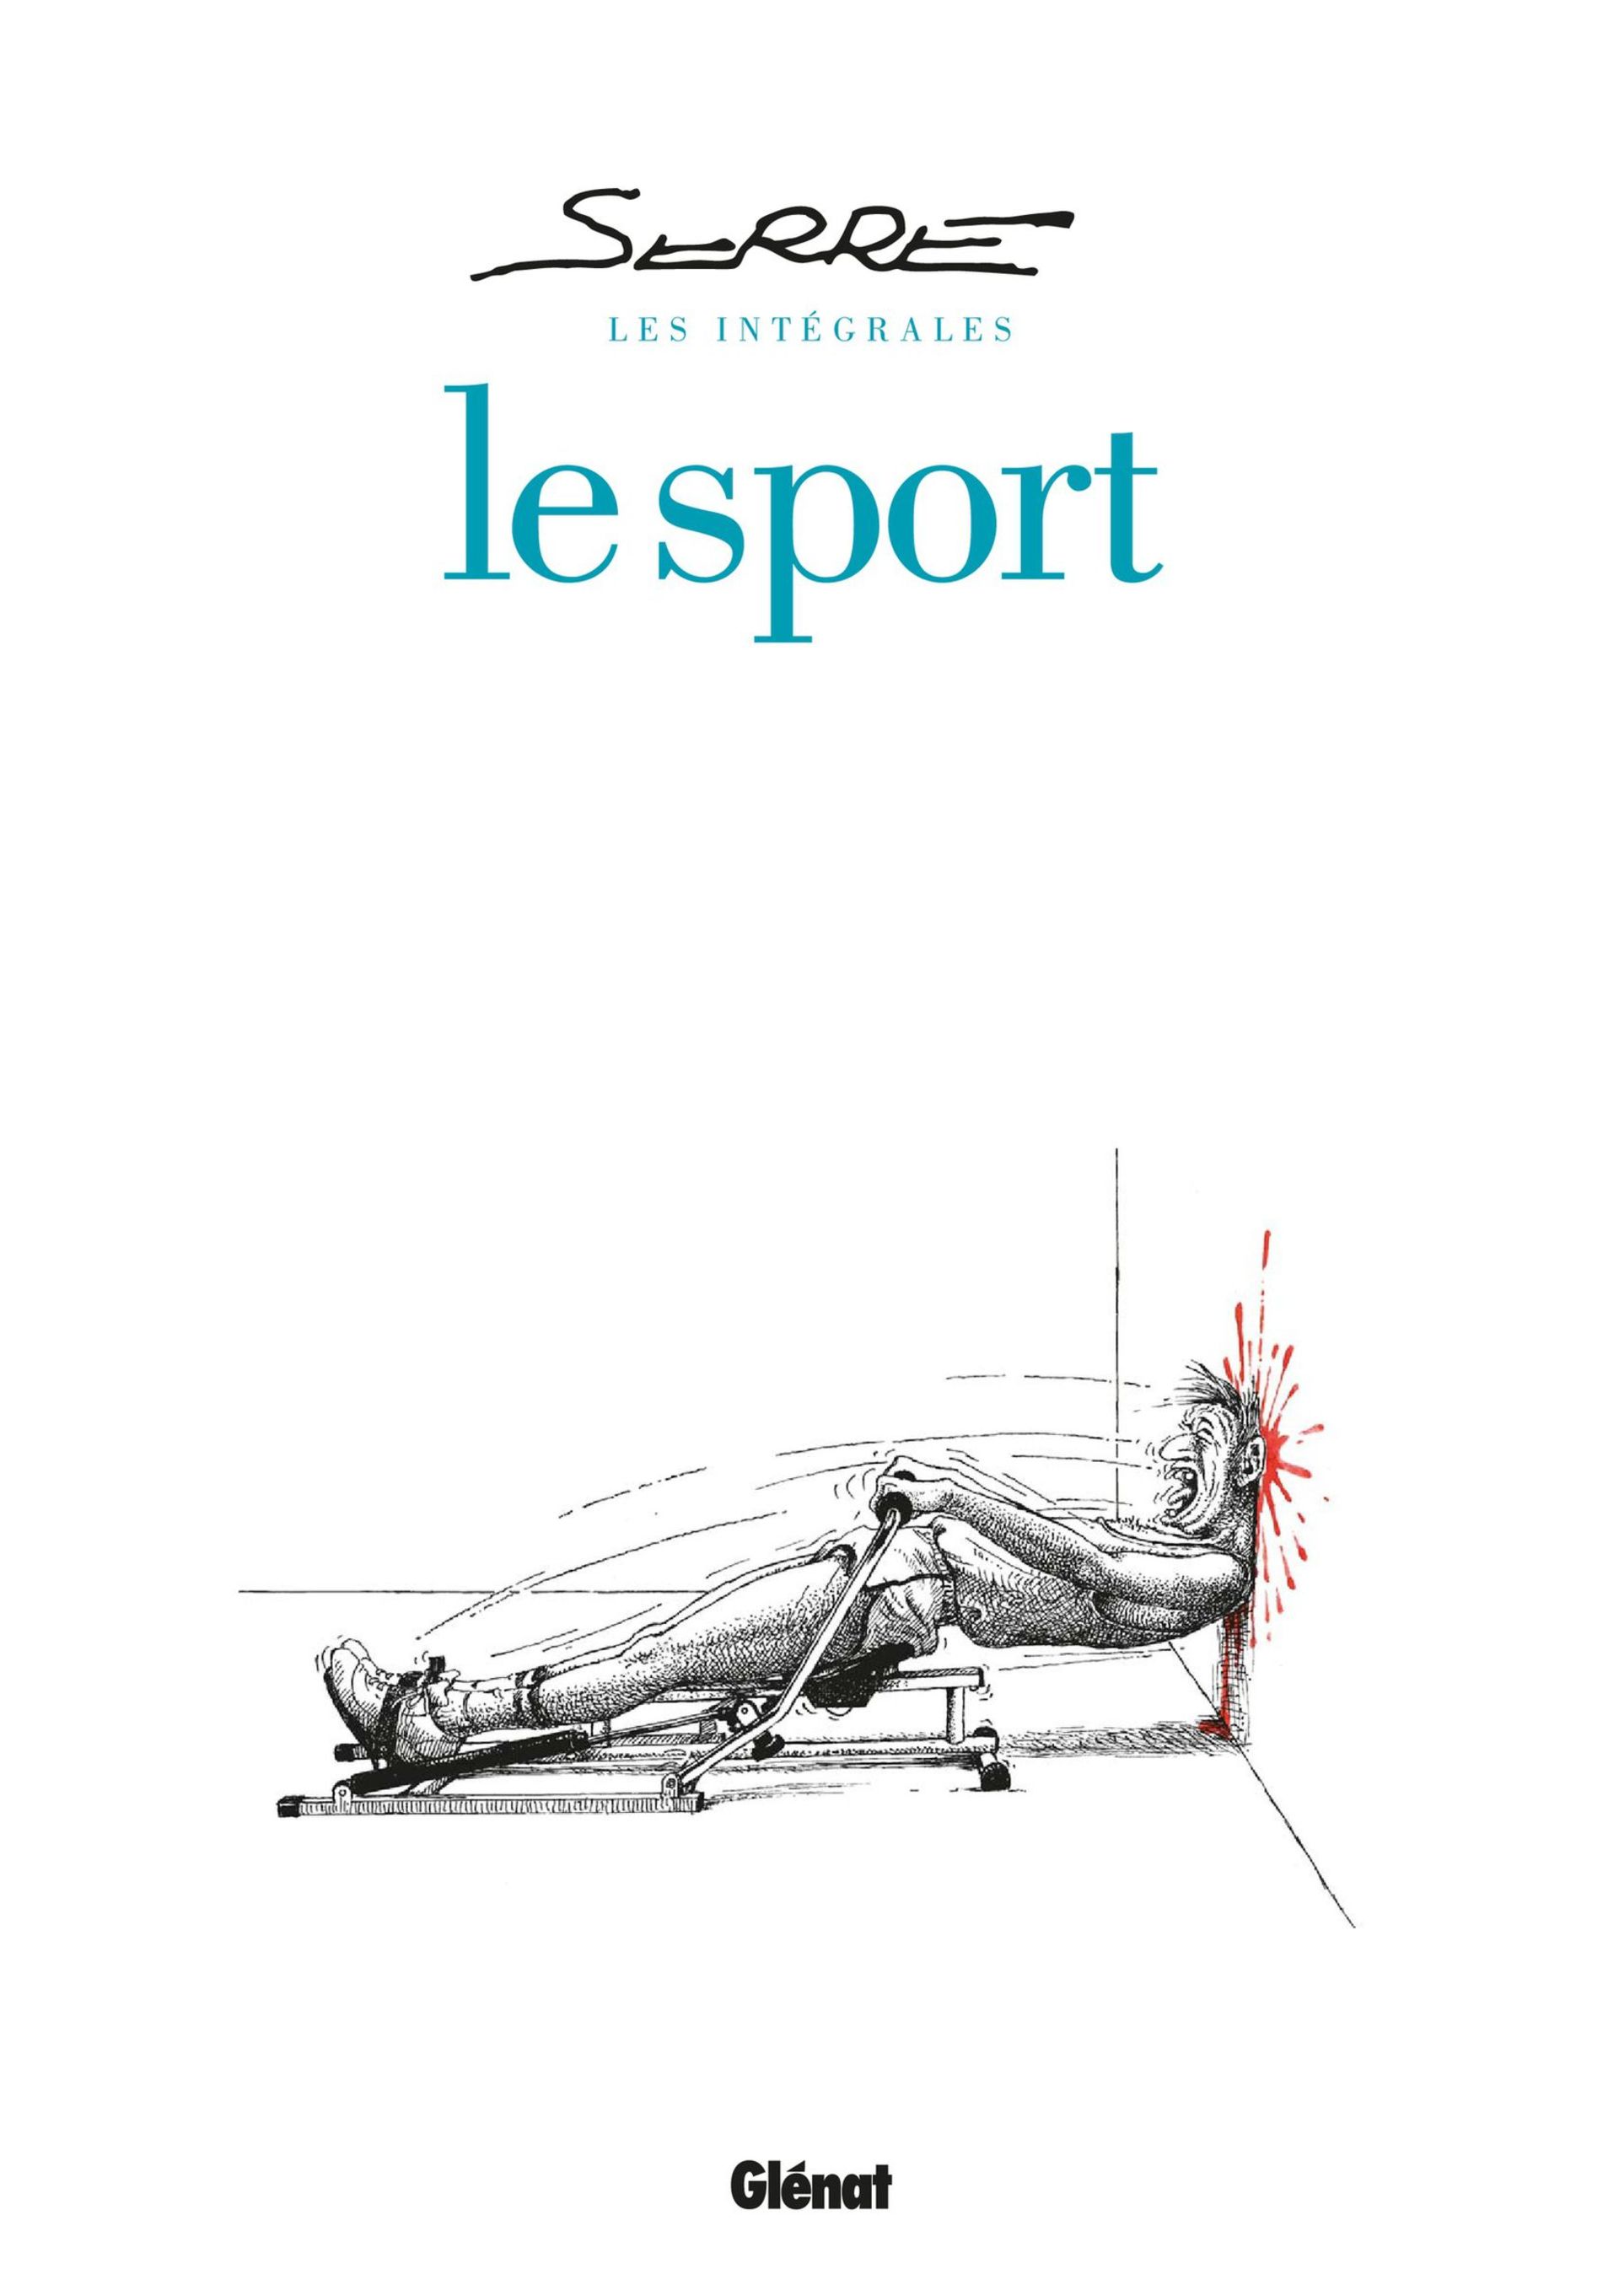 HUMOUR NOIR - DESSIN / SERRE : LA FORME OLYMPIQUE - LE SPORT T.2 - GLENAT  -1994